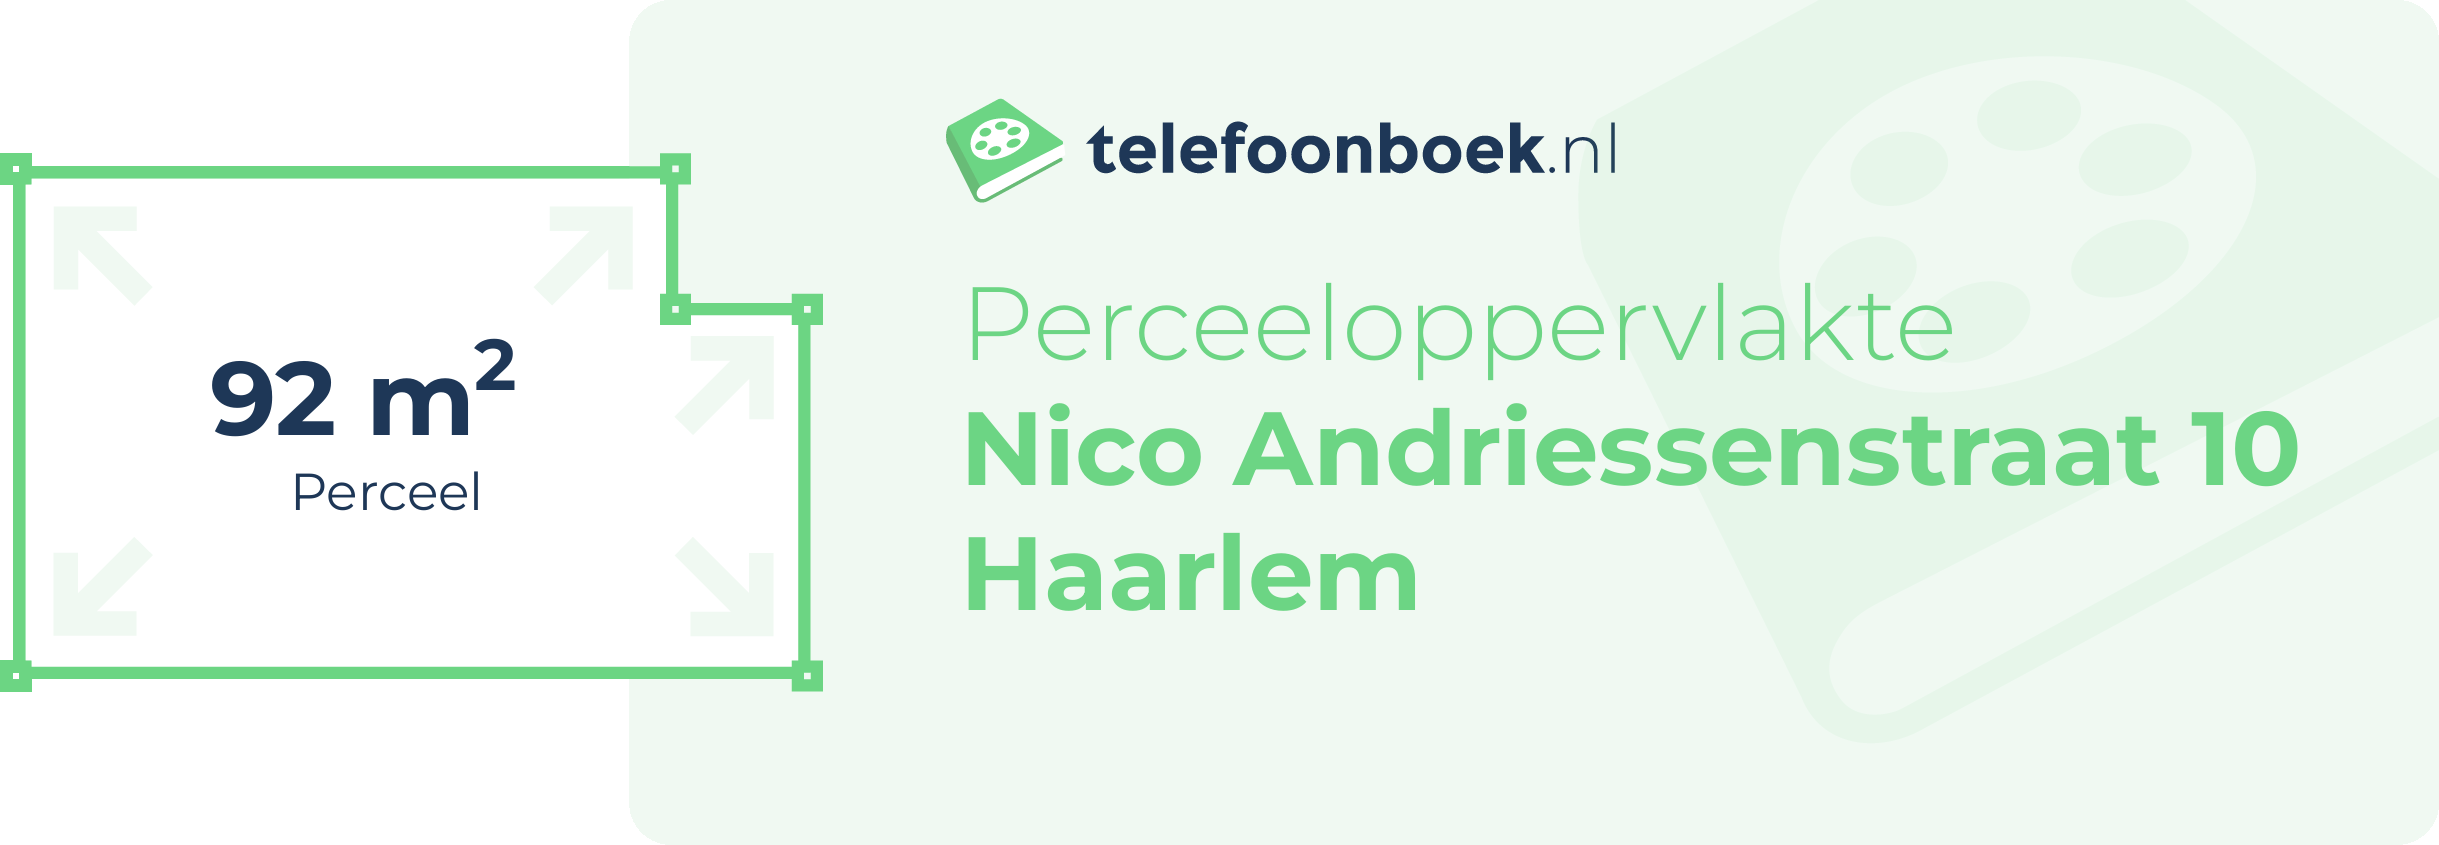 Perceeloppervlakte Nico Andriessenstraat 10 Haarlem